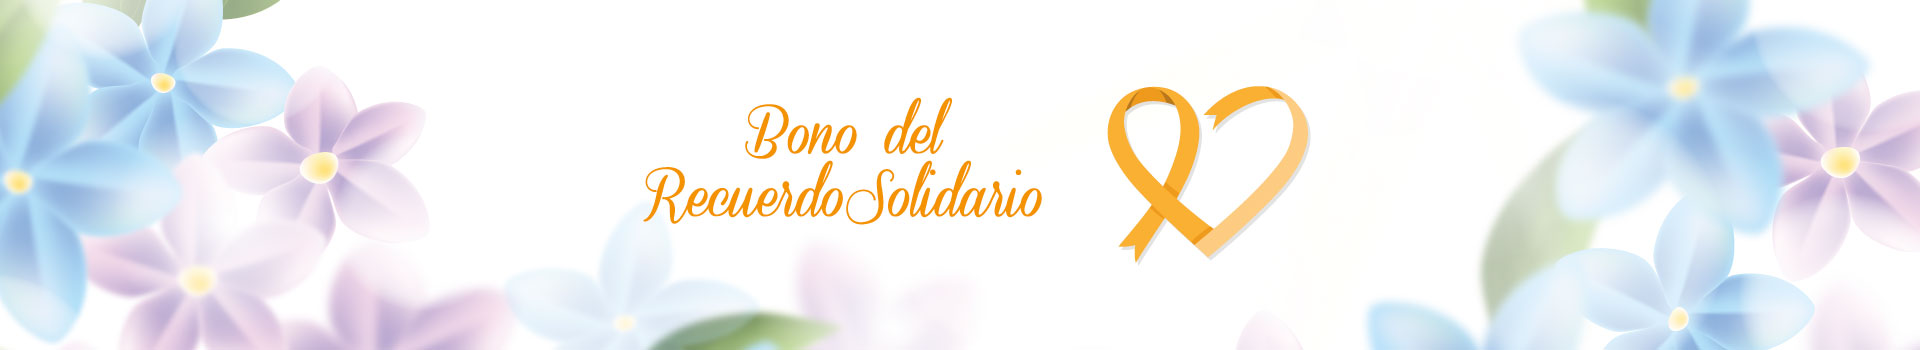 Bono Recuerdo Solidario